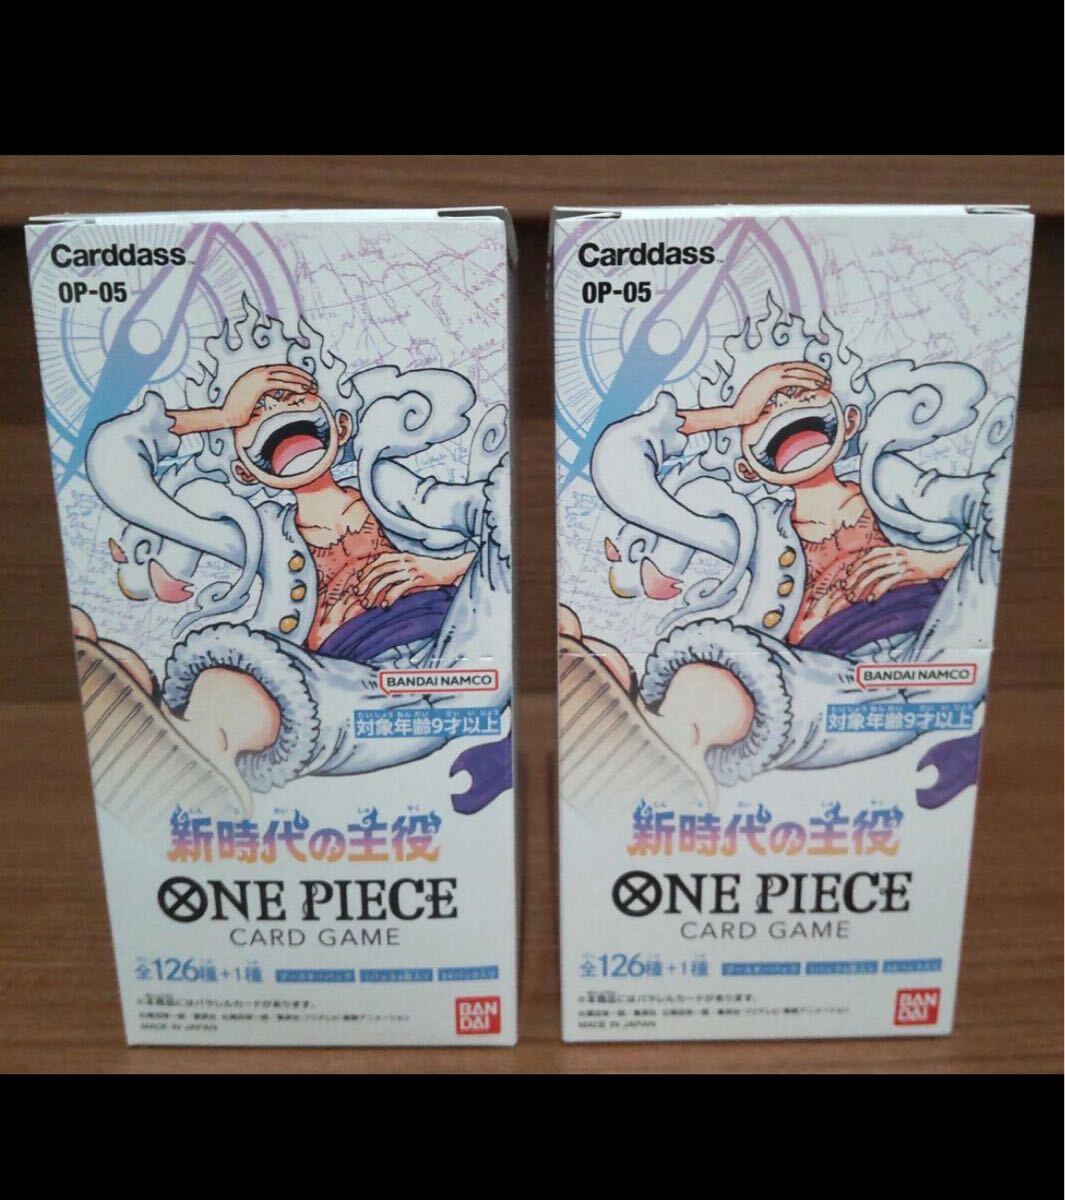  One-piece карты новый времена. . позиций 2BOX минут нераспечатанный один владелец товар 1 иен старт бесплатная доставка 